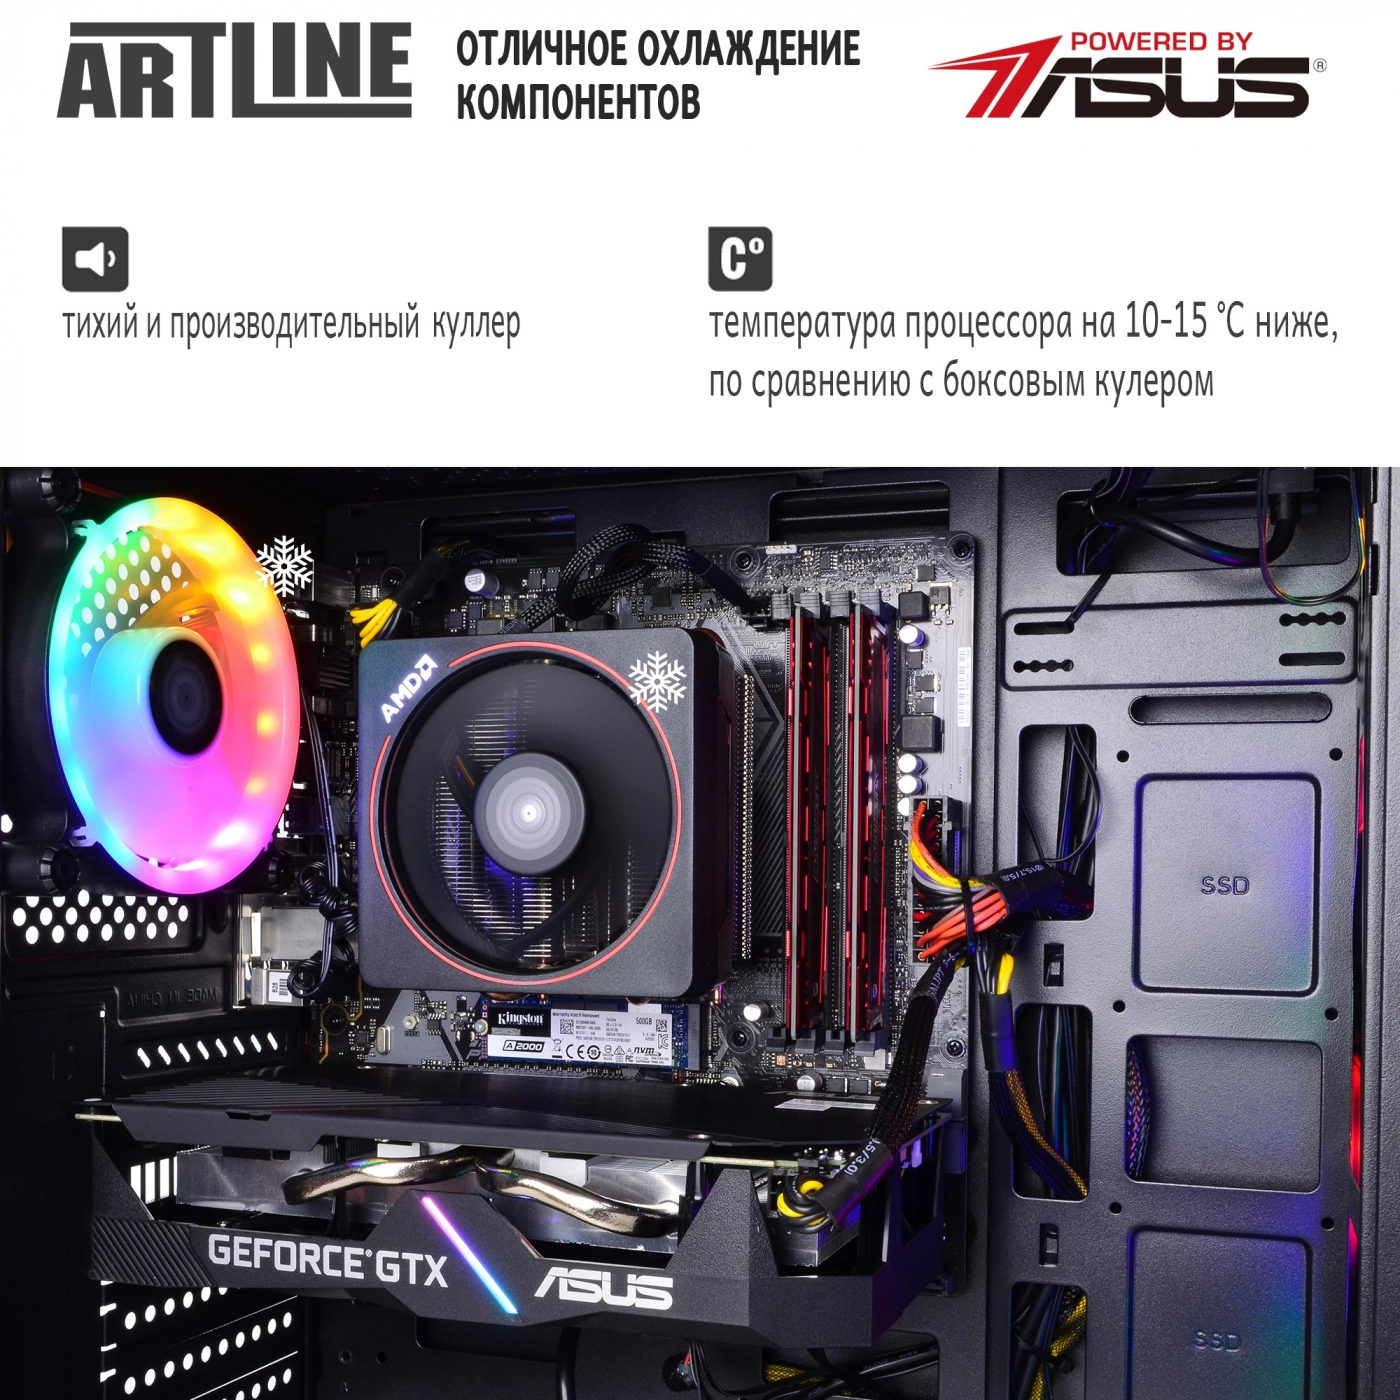 Купить Компьютер ARTLINE Gaming X47v40 - фото 6